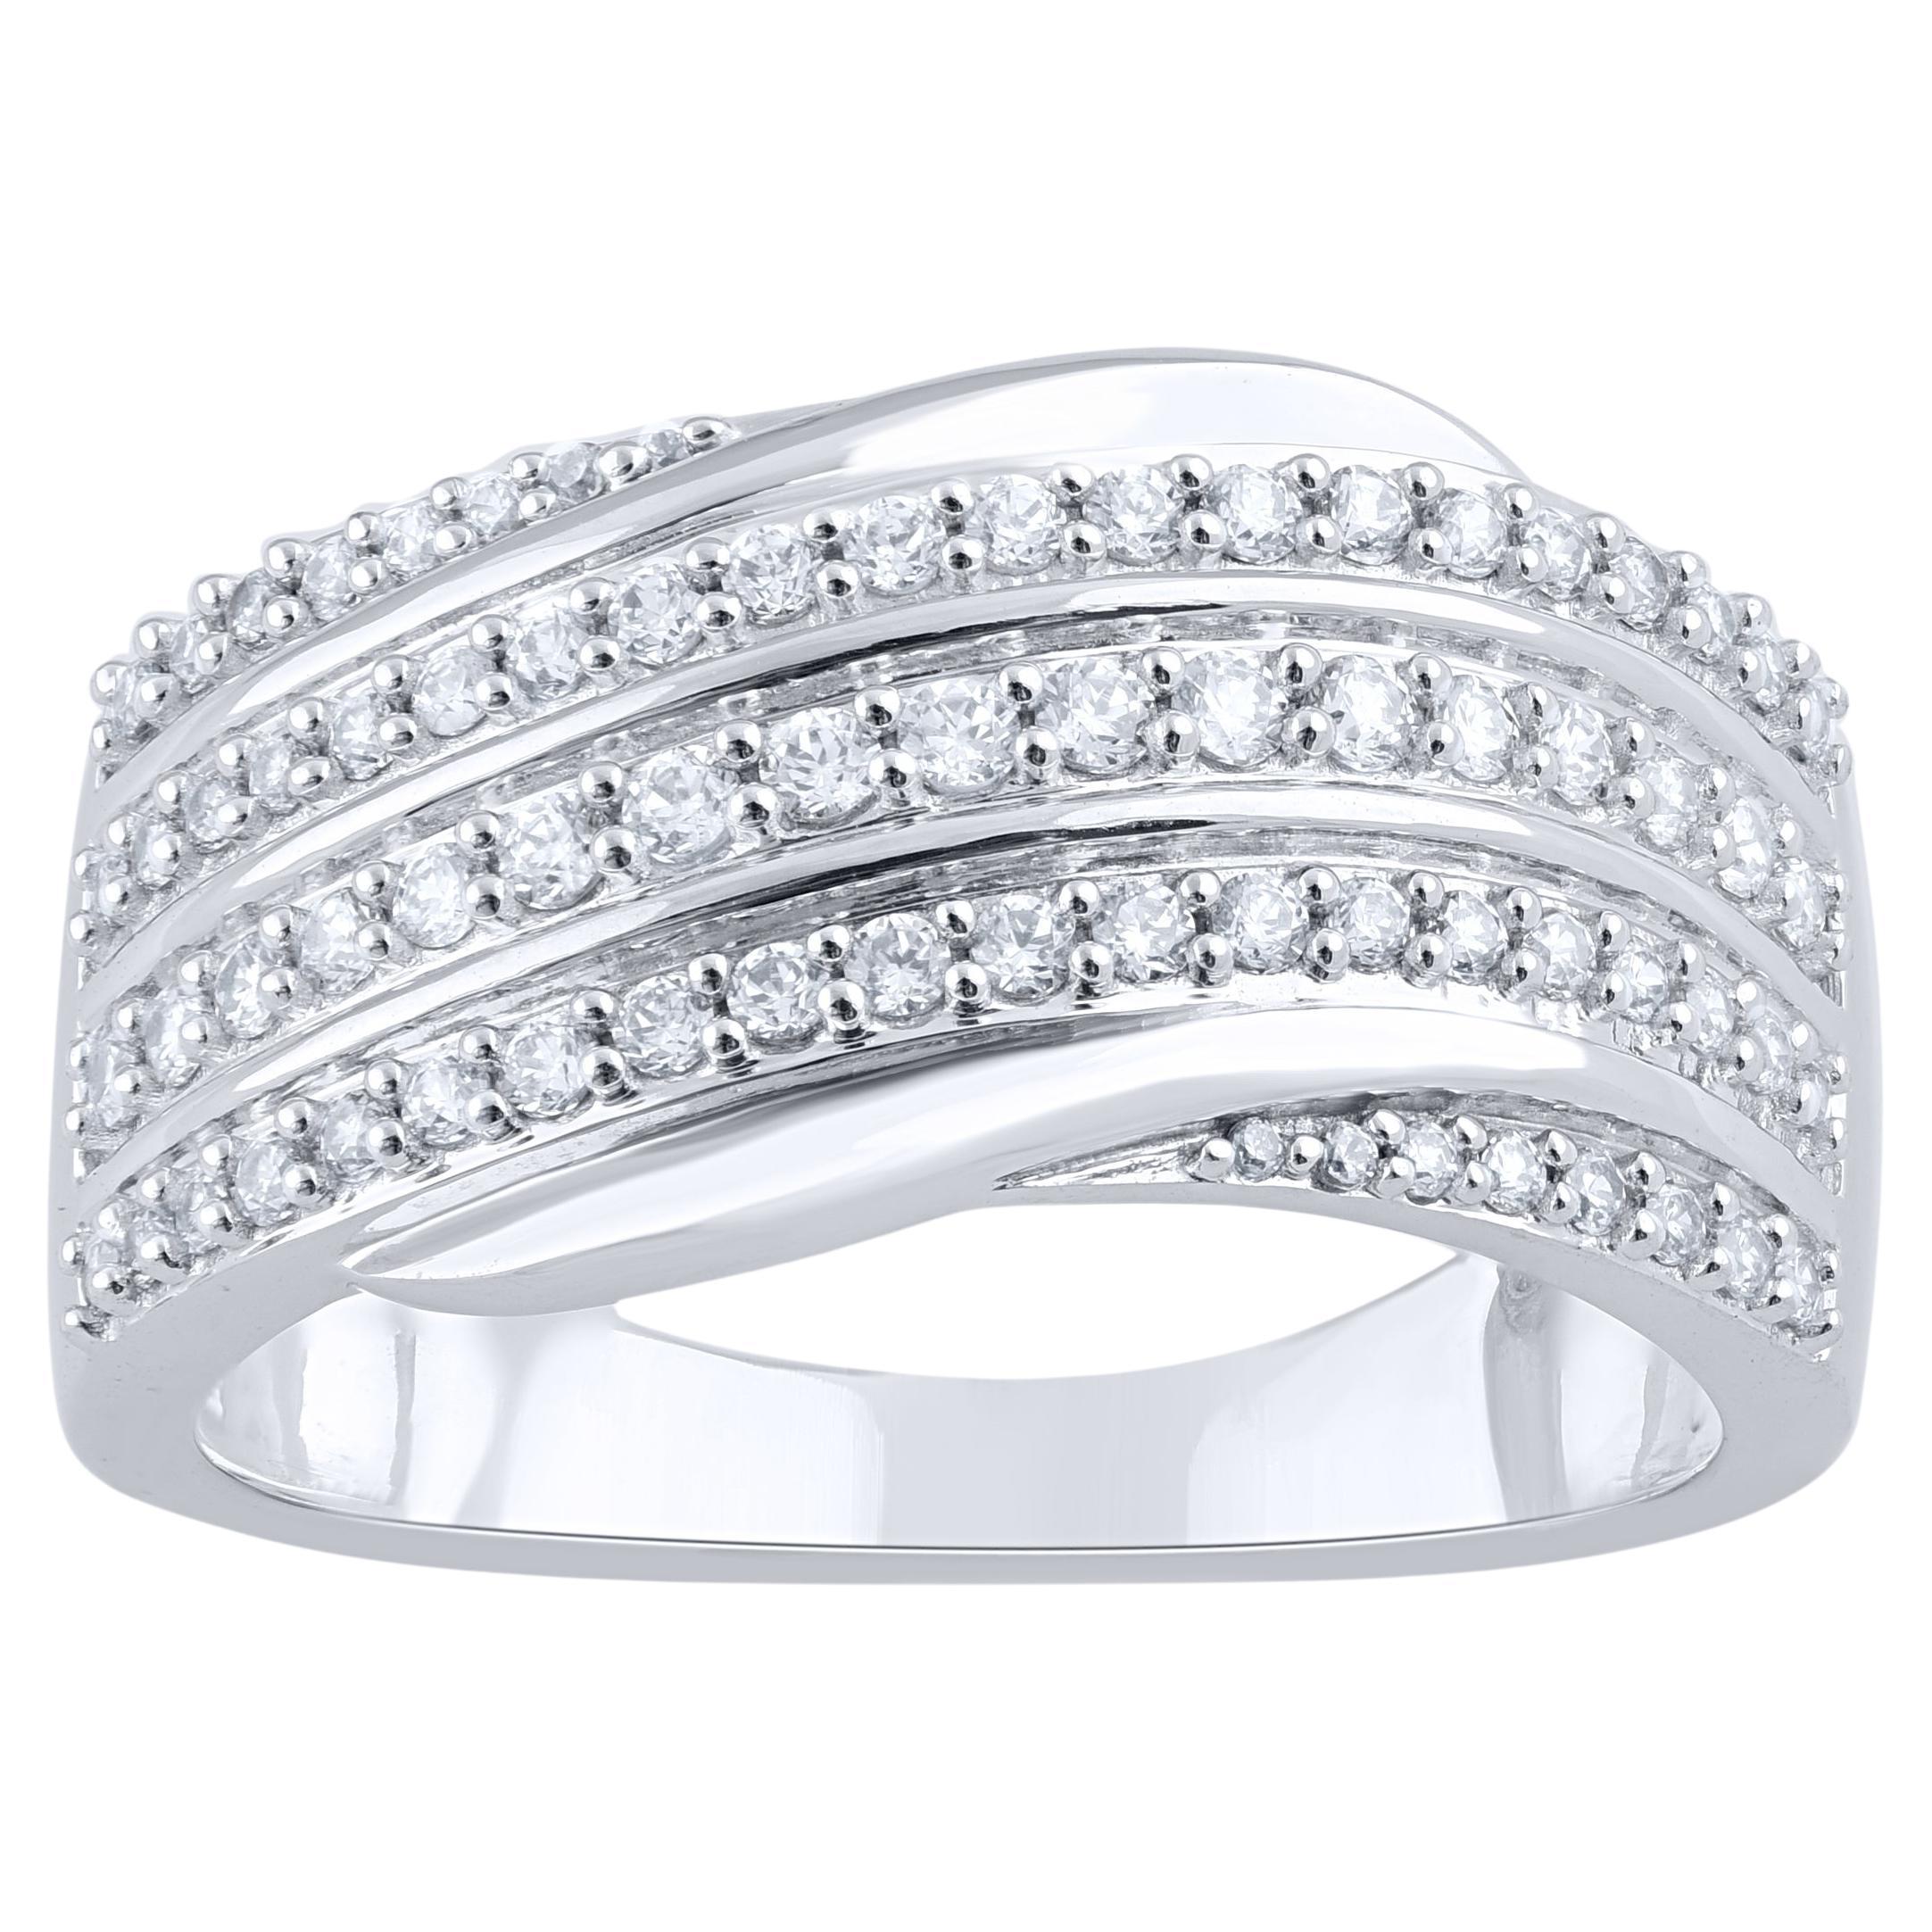 TJD 0.50 Carat Natural Round Diamond 14 Karat White Gold Wedding Band Ring For Sale